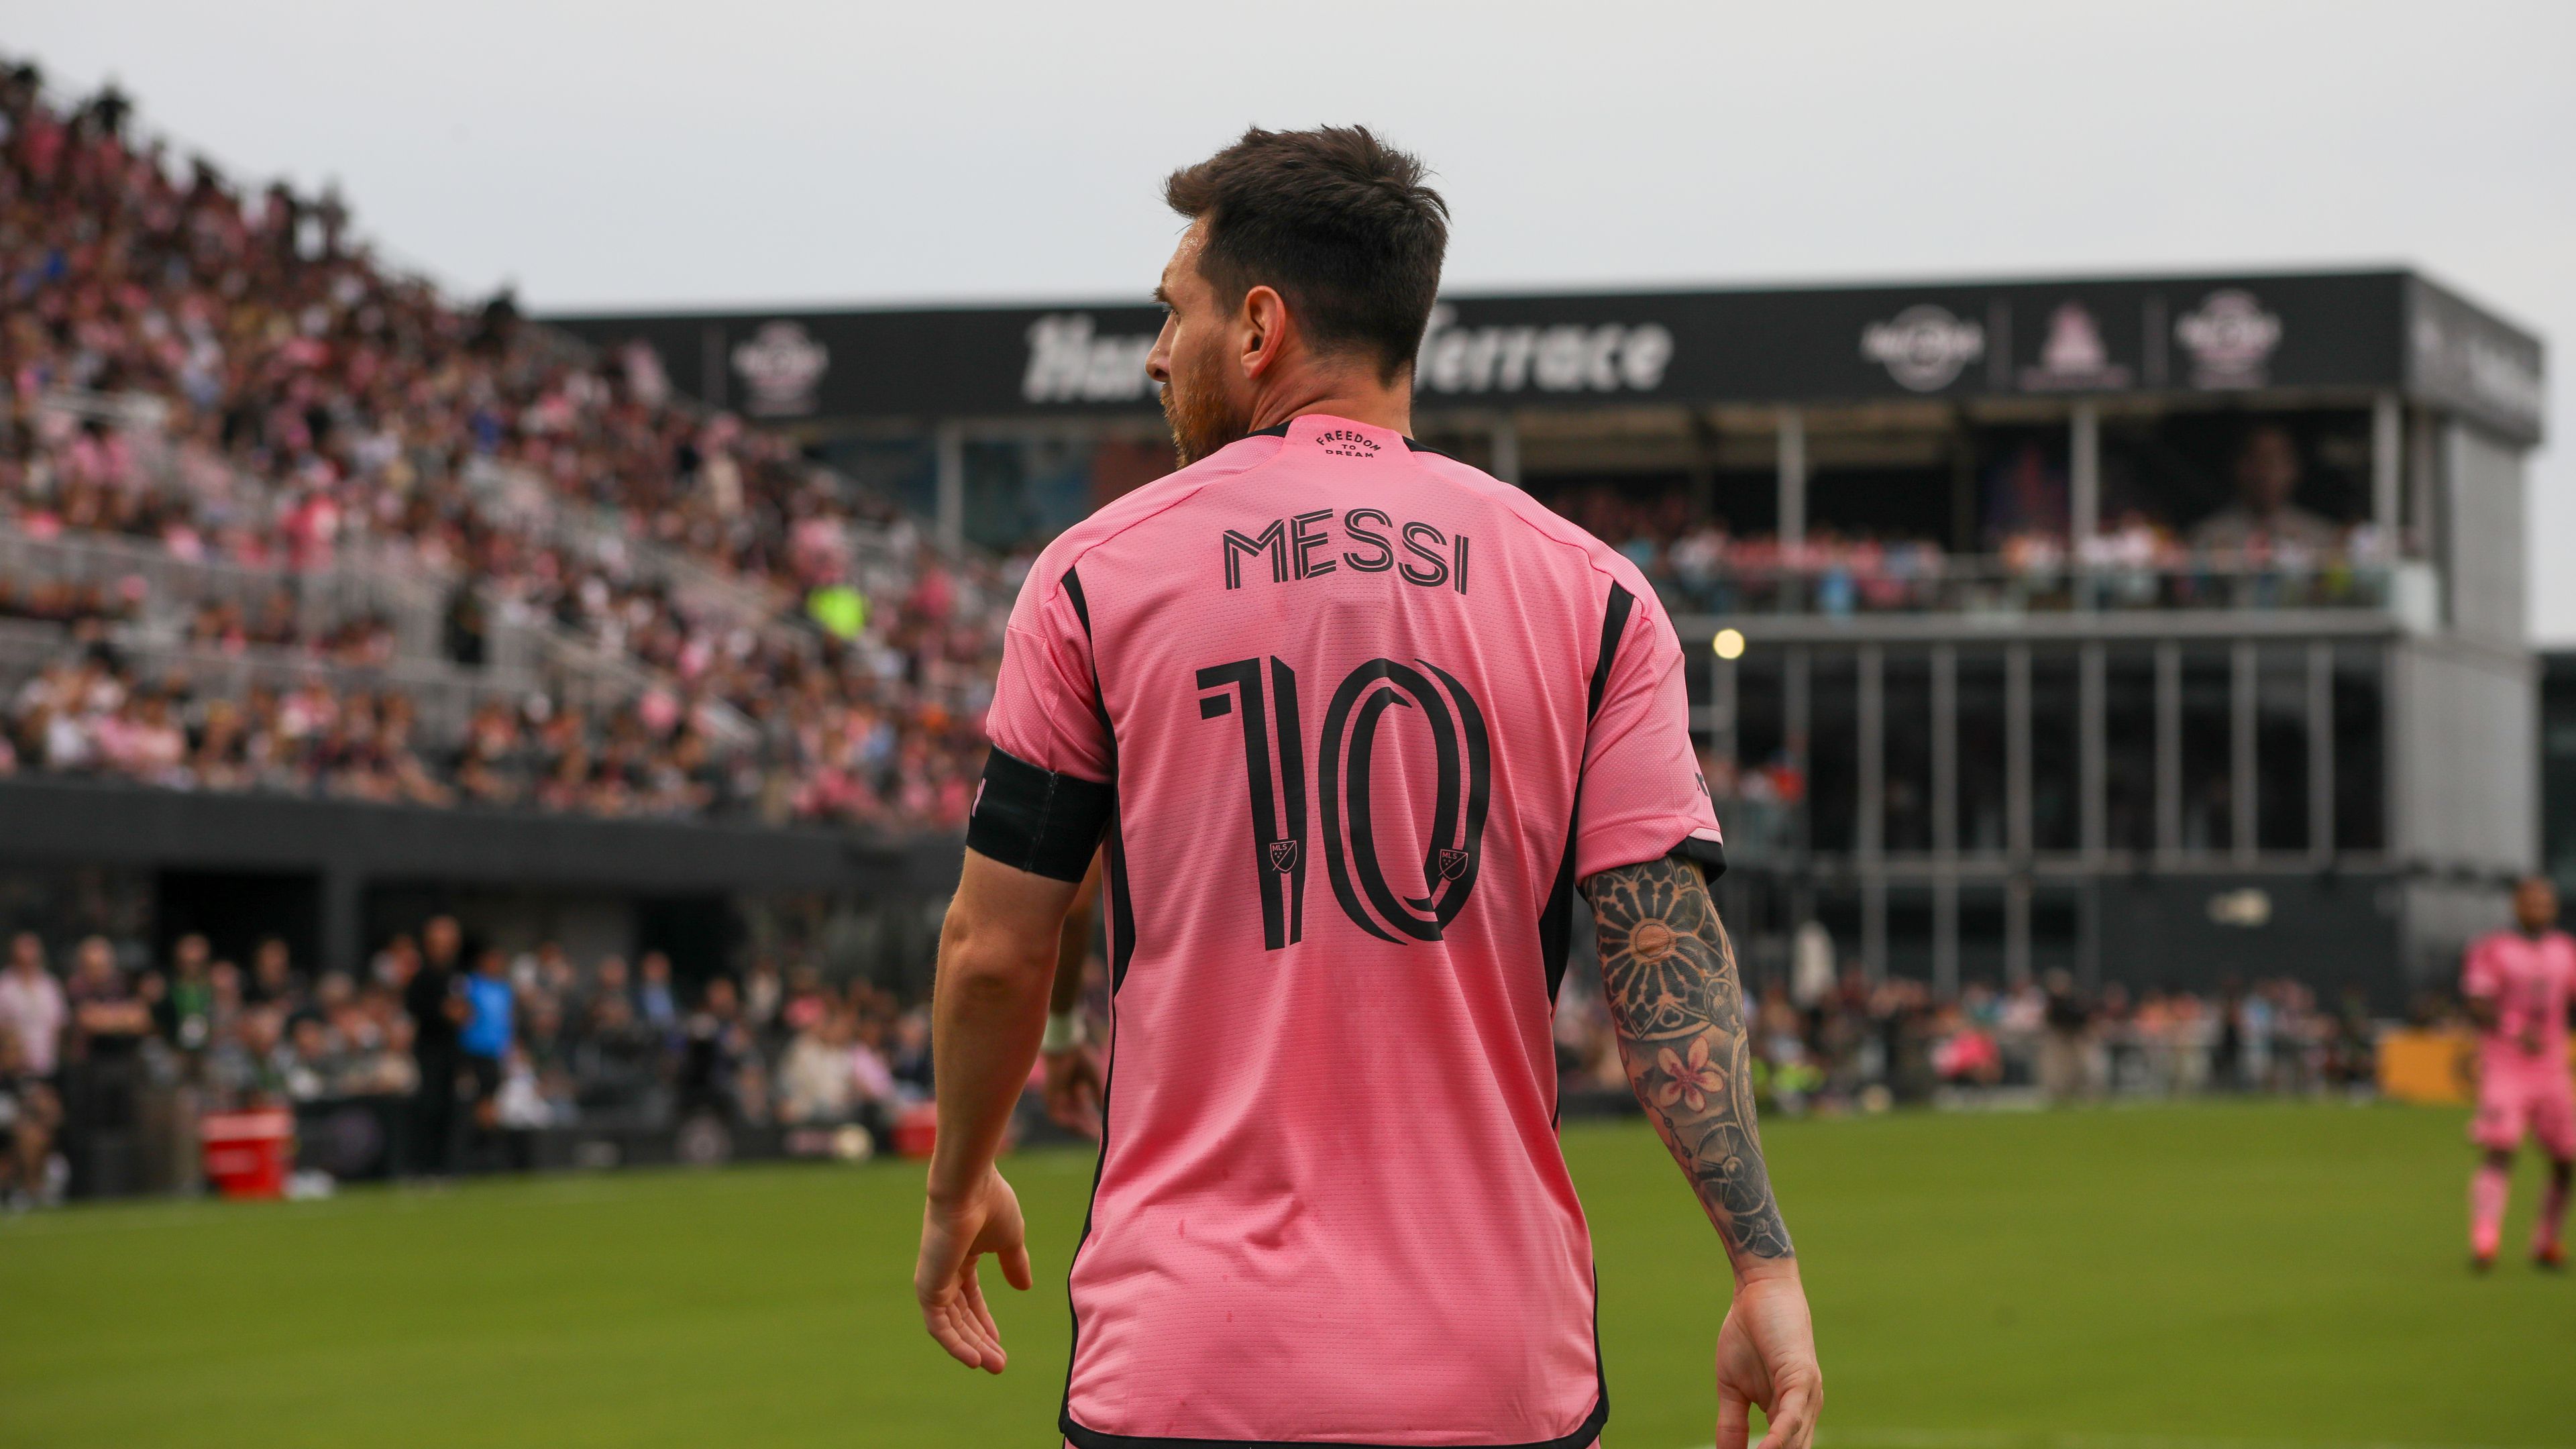 Megvan Messi 500. bajnoki gólja, már csak egy ember előzi meg C. Ronaldón és Puskáson kívül